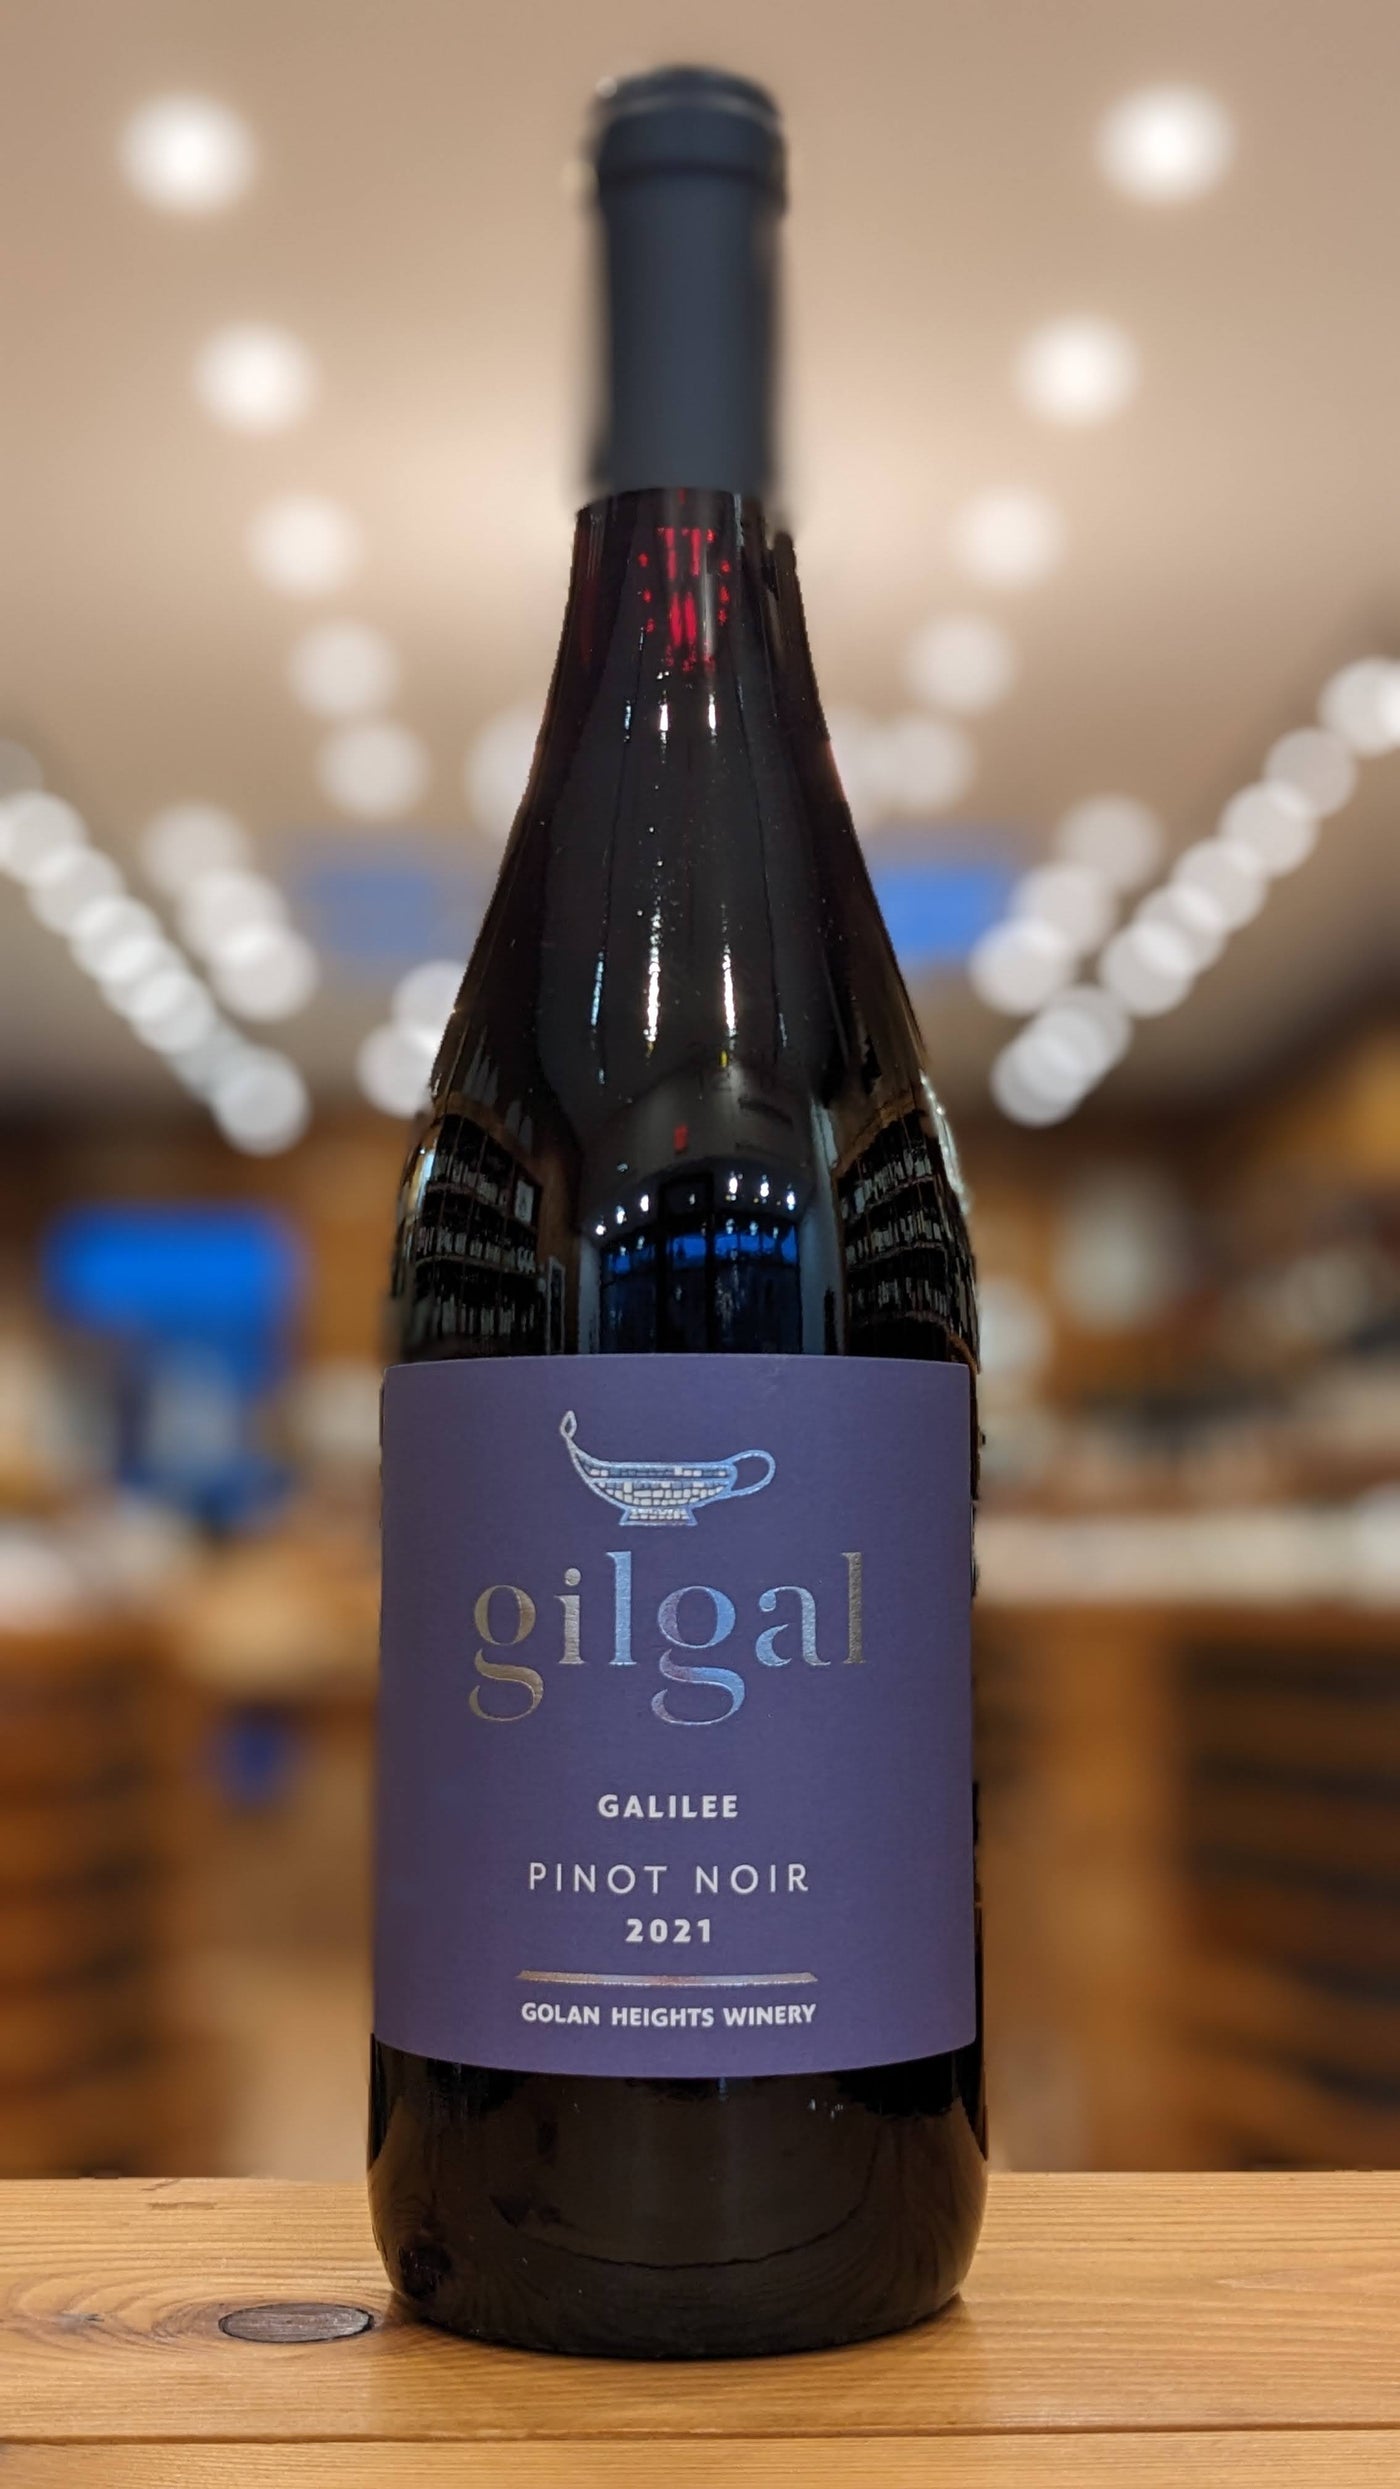 Golan Heights Gilgal Pinot Noir 2021